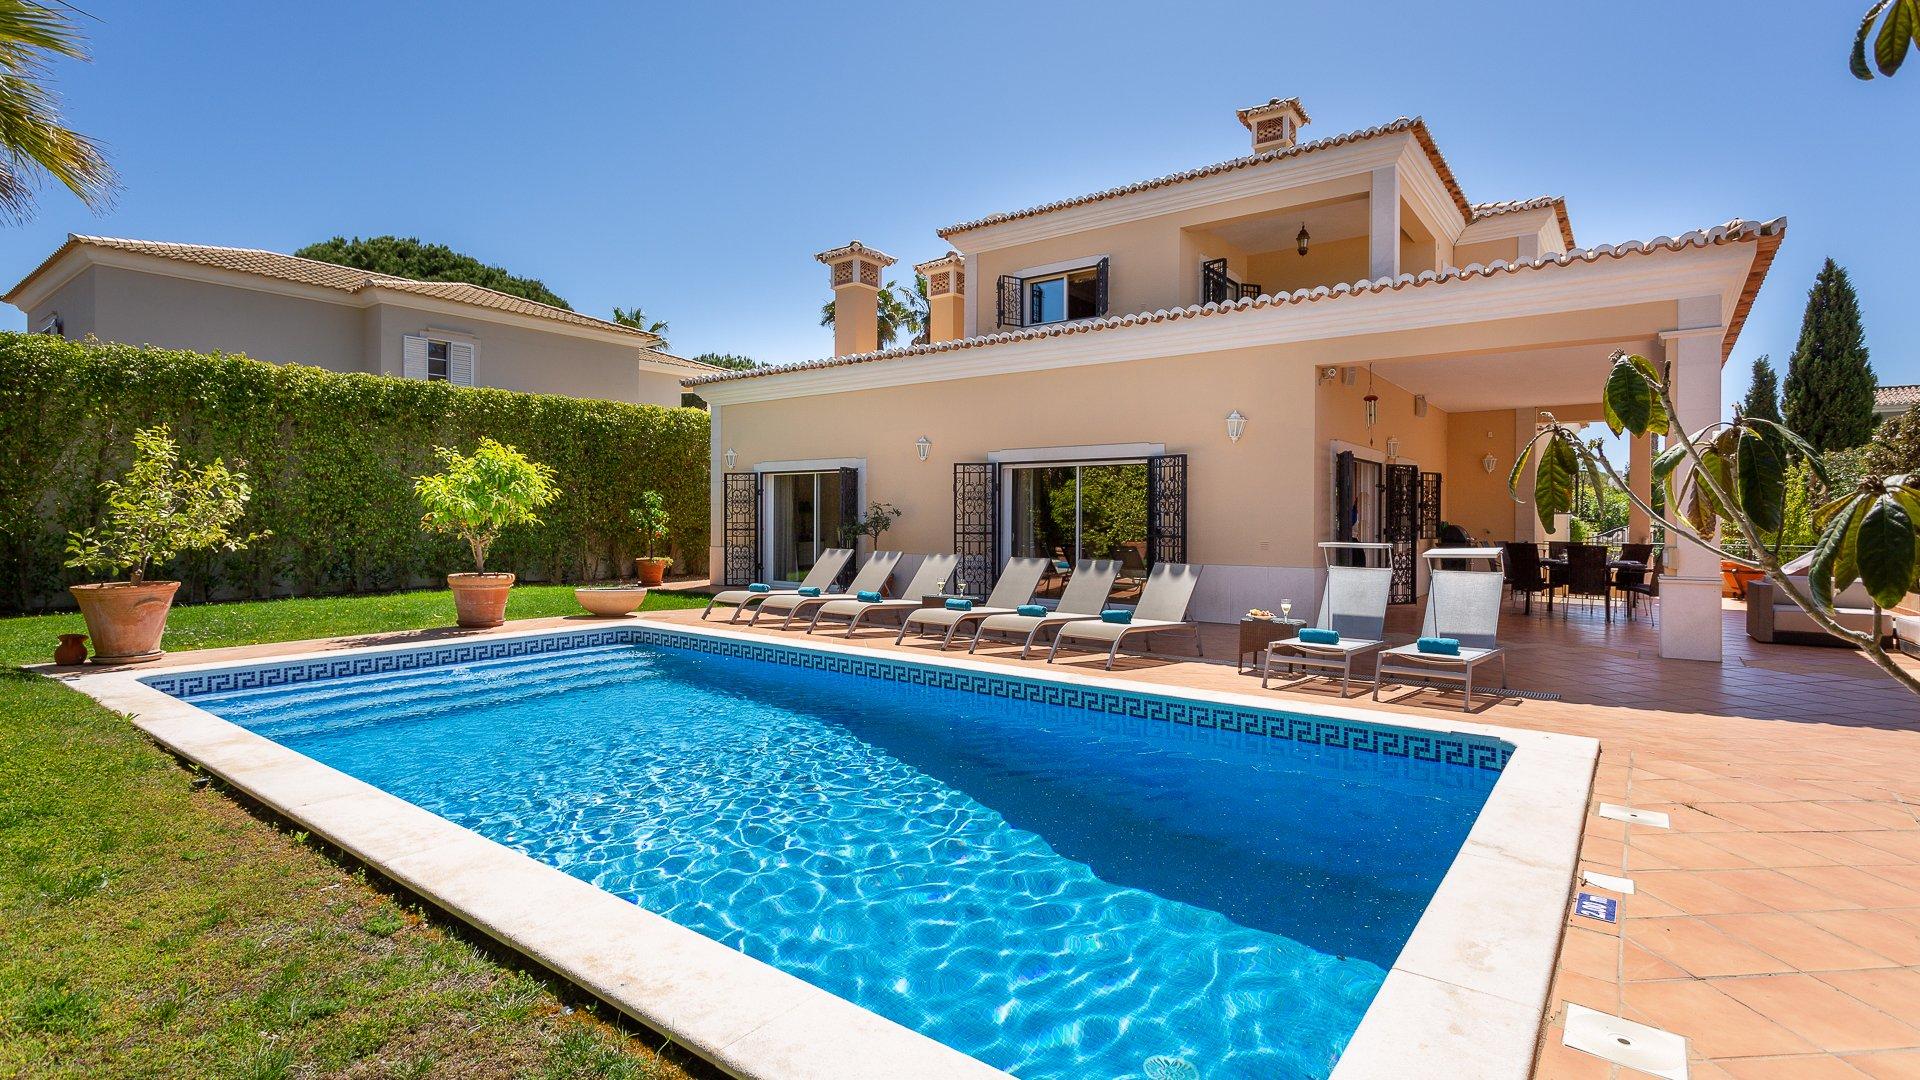 Villa Cyan - Varandas do Lago, Quinta do Lago, Algarve - SB_-_Cyan_web-30.jpg